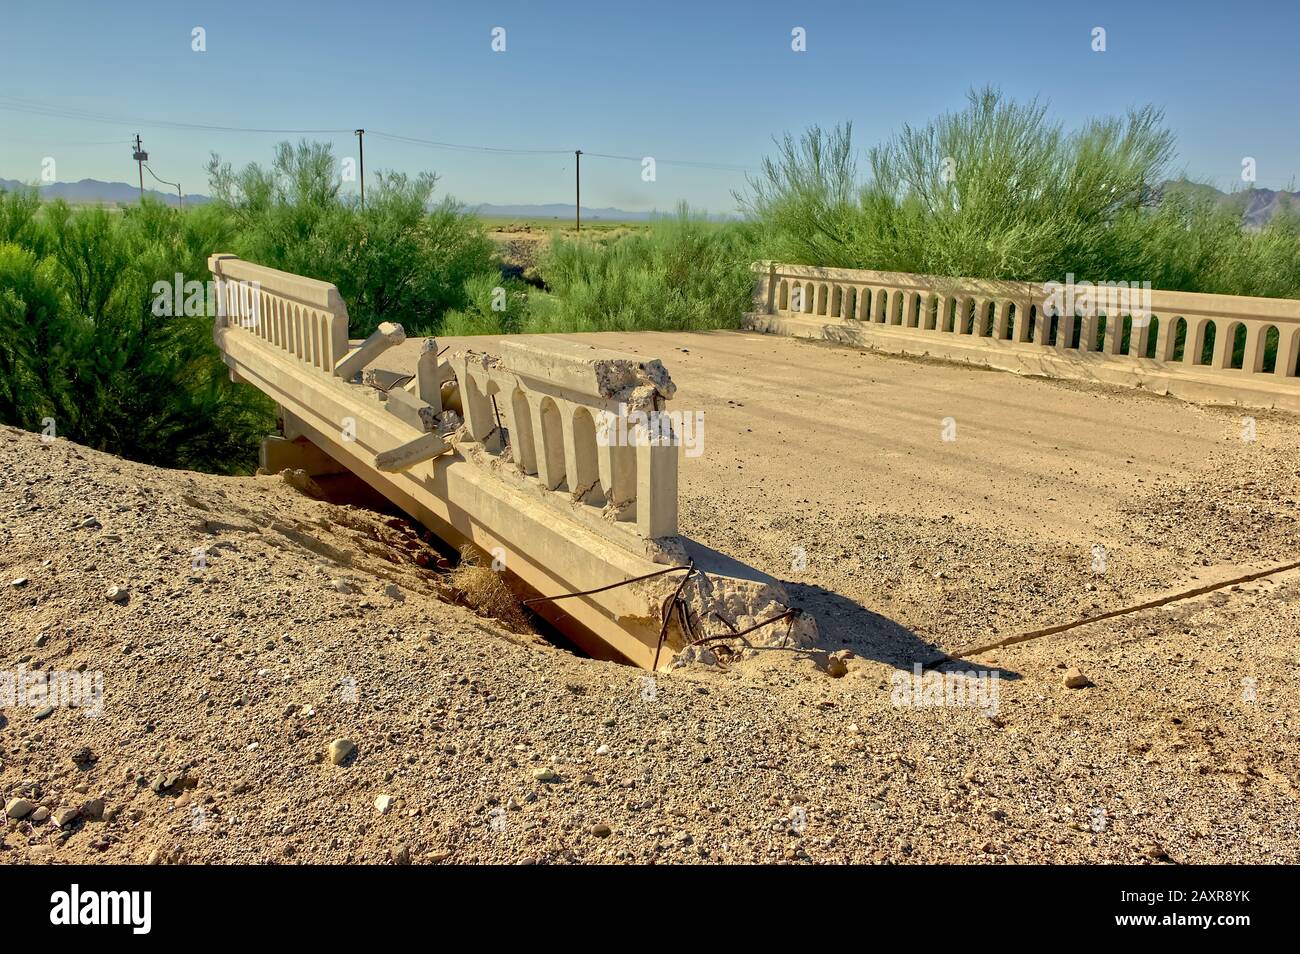 Die Überreste einer Brücke, die vor langer Zeit in einem abgelegenen Gebiet von Arizona ausgewaschen wurde. Statt sie zu reparieren, wurde die zerbrochene Brücke einfach umgangen. Stockfoto